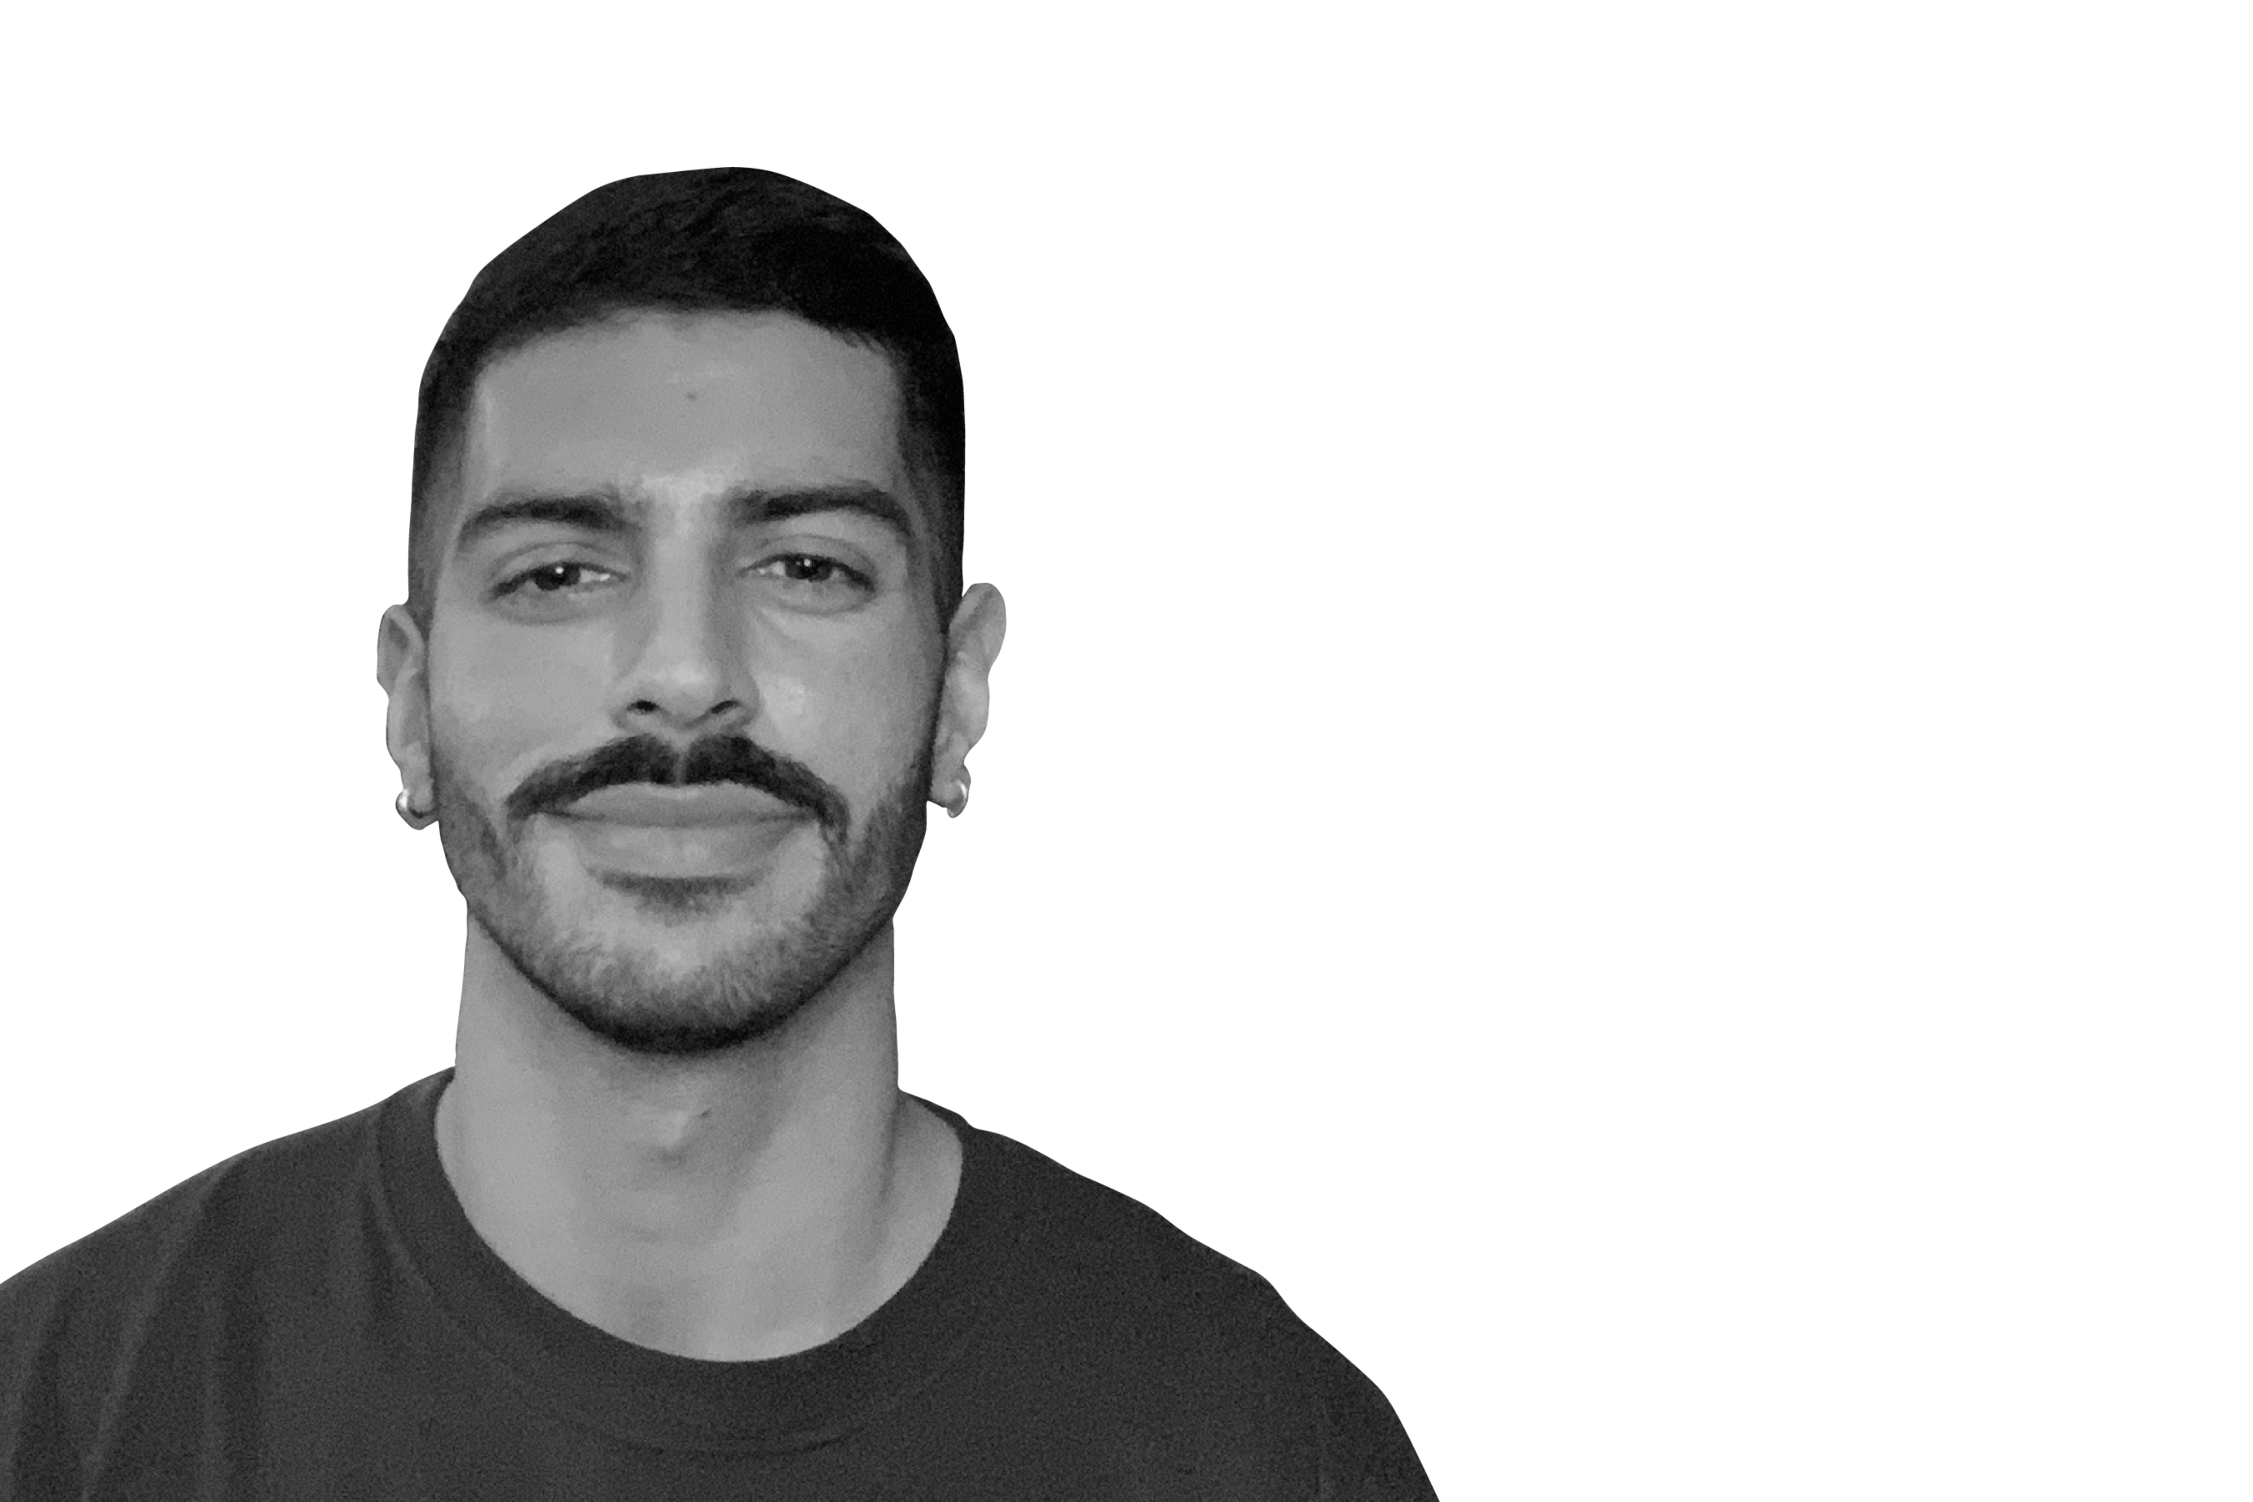 Ahmad Mahmood